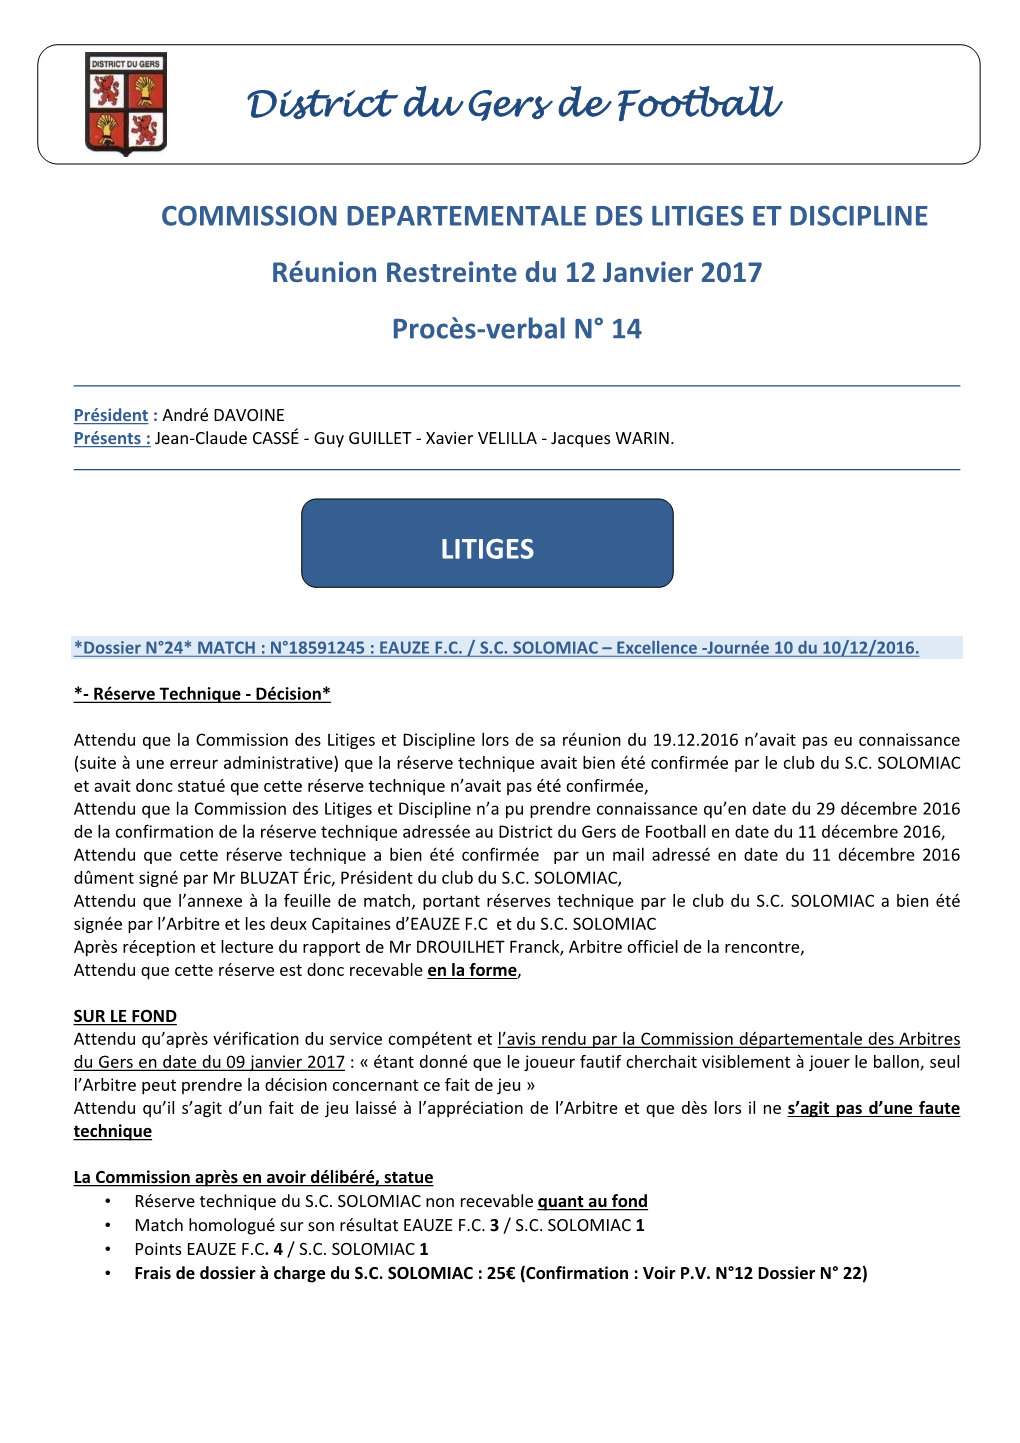 PVCLD N14 Réunion Restreinte Litige Du 12.01.2017